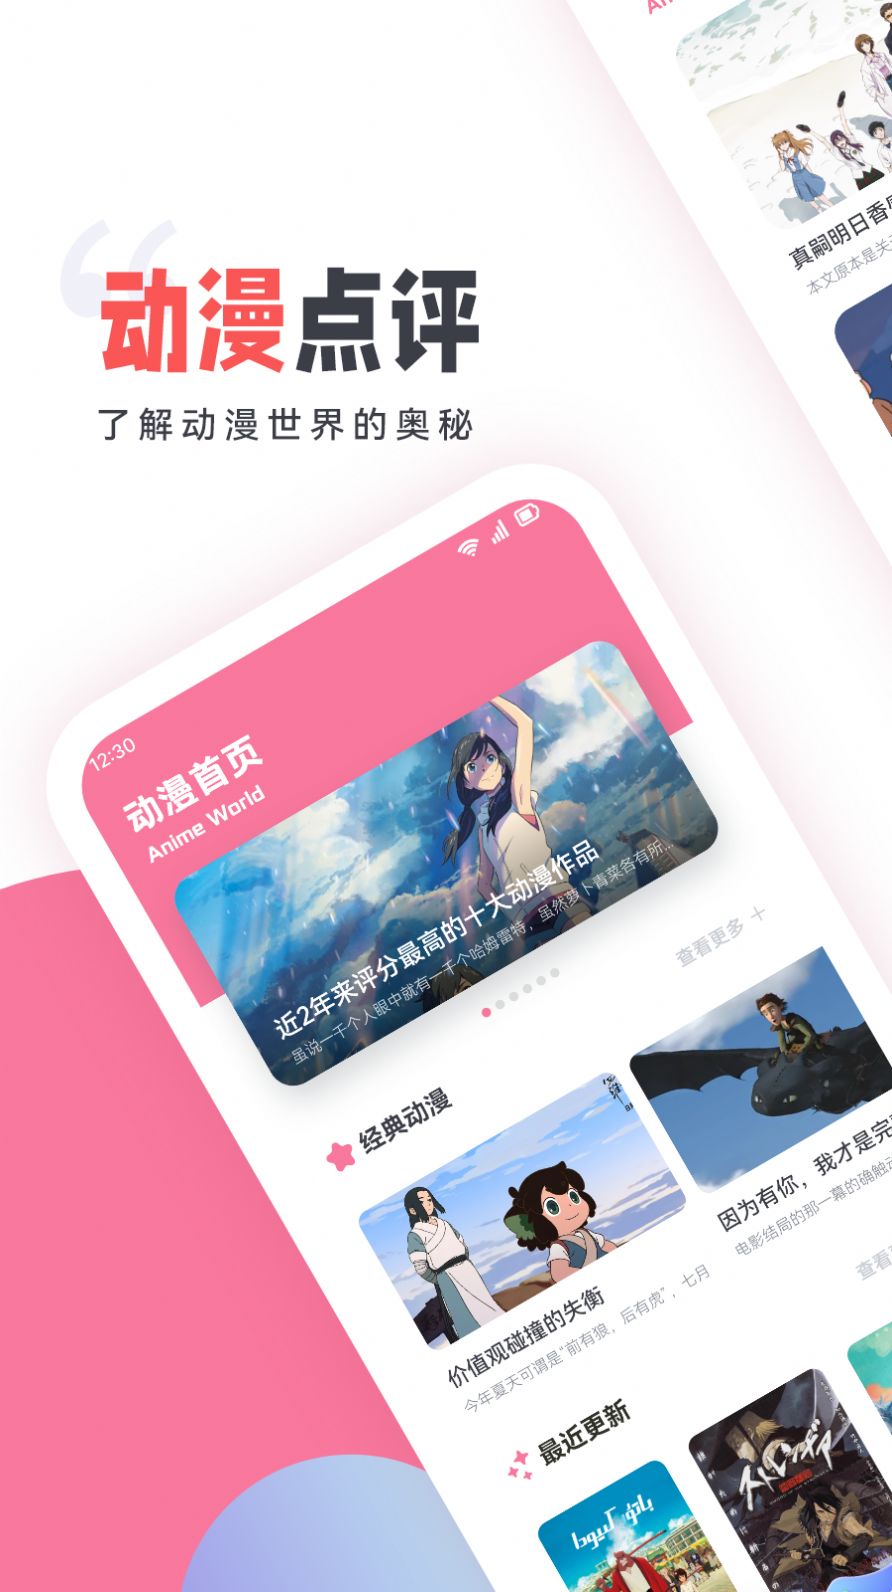 嘀嘀动漫盒子手机版app官方正版下载图片4